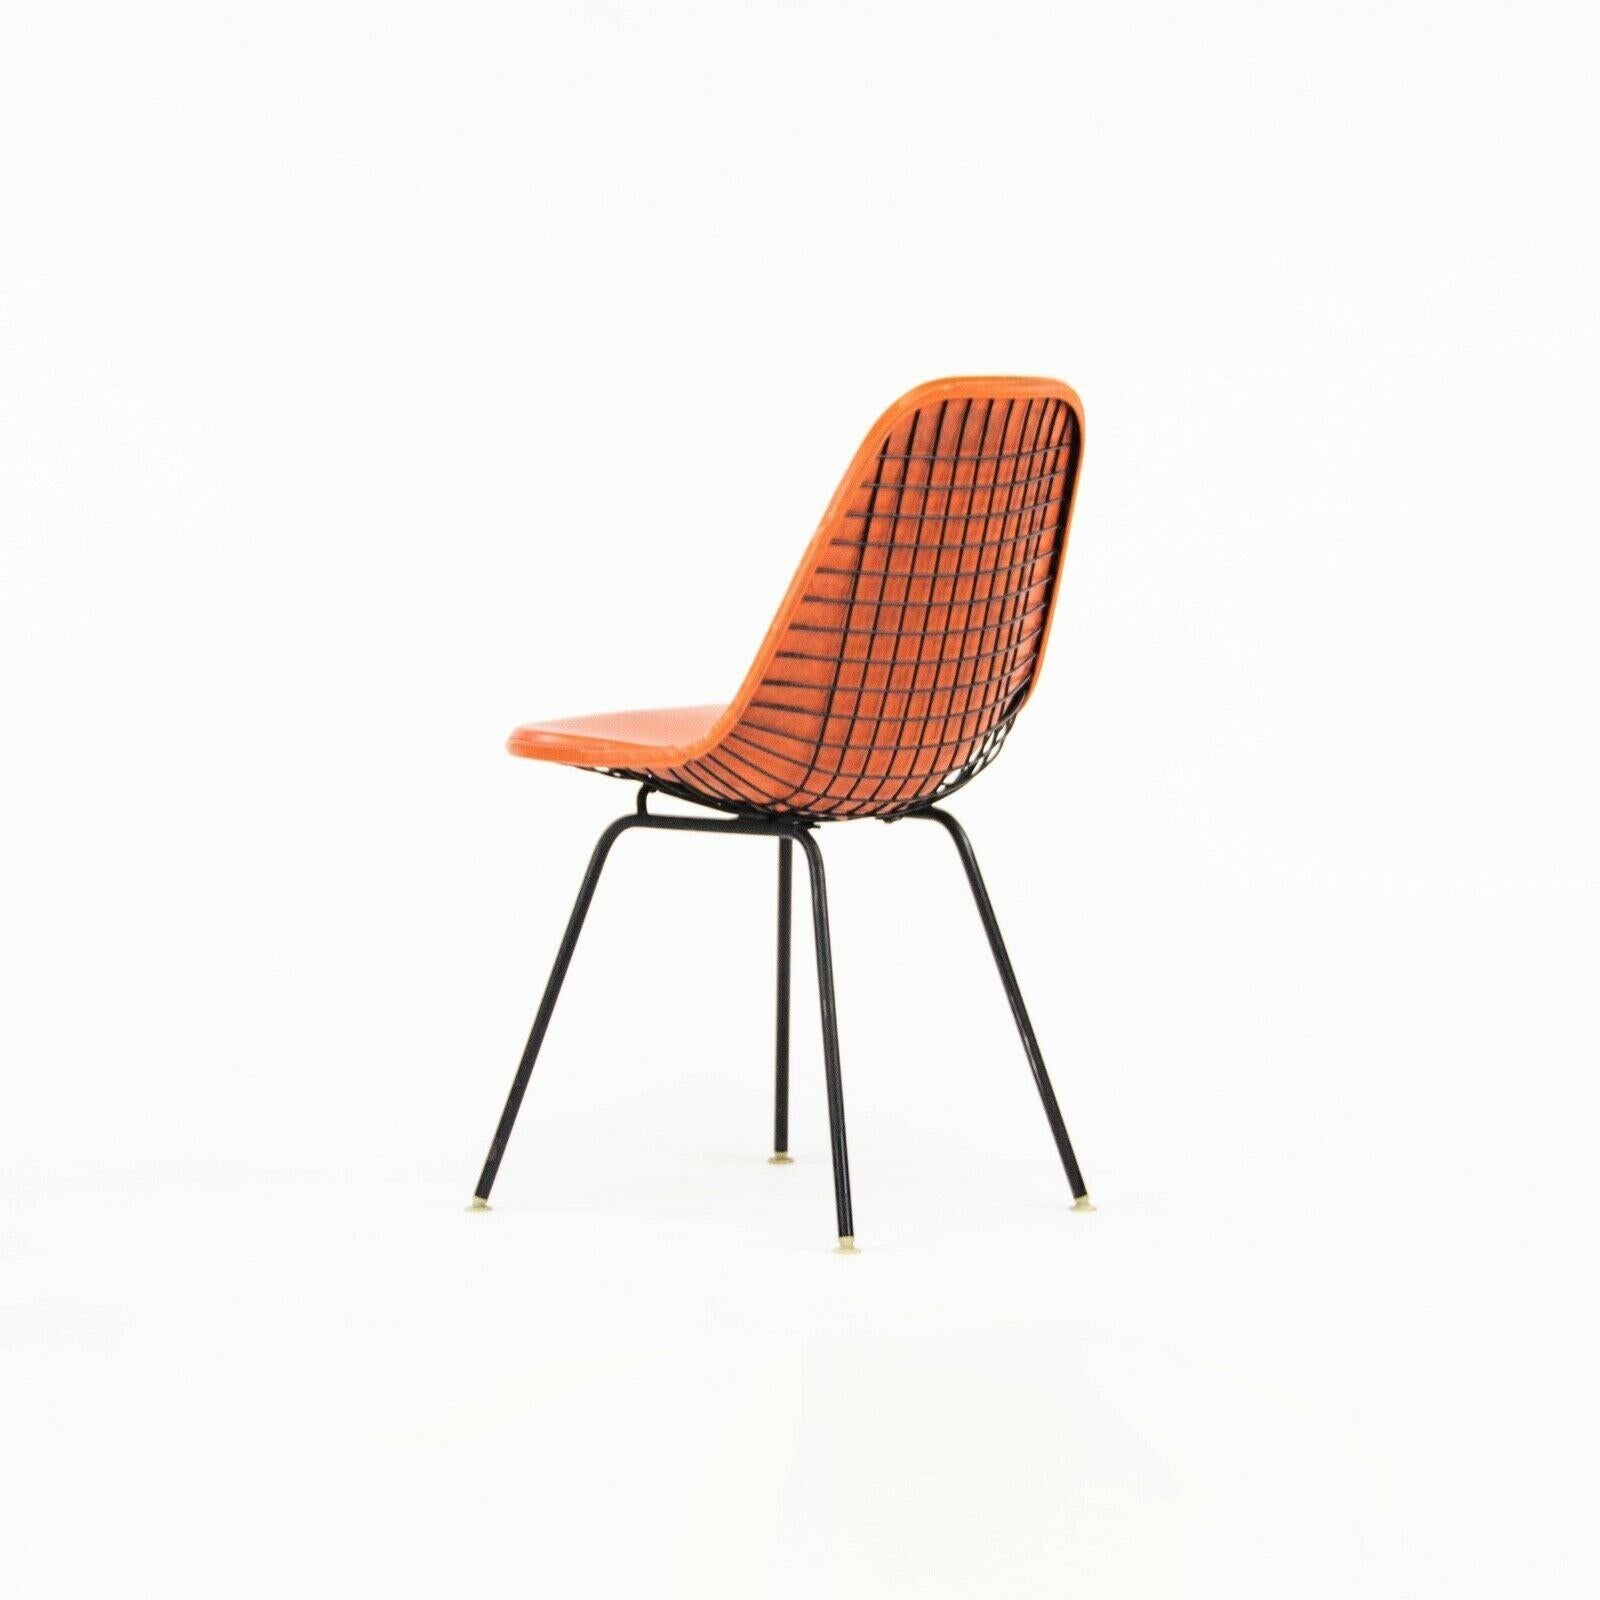 Milieu du XXe siècle 1957 Herman Miller Eames DKX Wire Dining Chair with Full Naugahyde Orange Pad (chaise de salle à manger en fil de fer) en vente